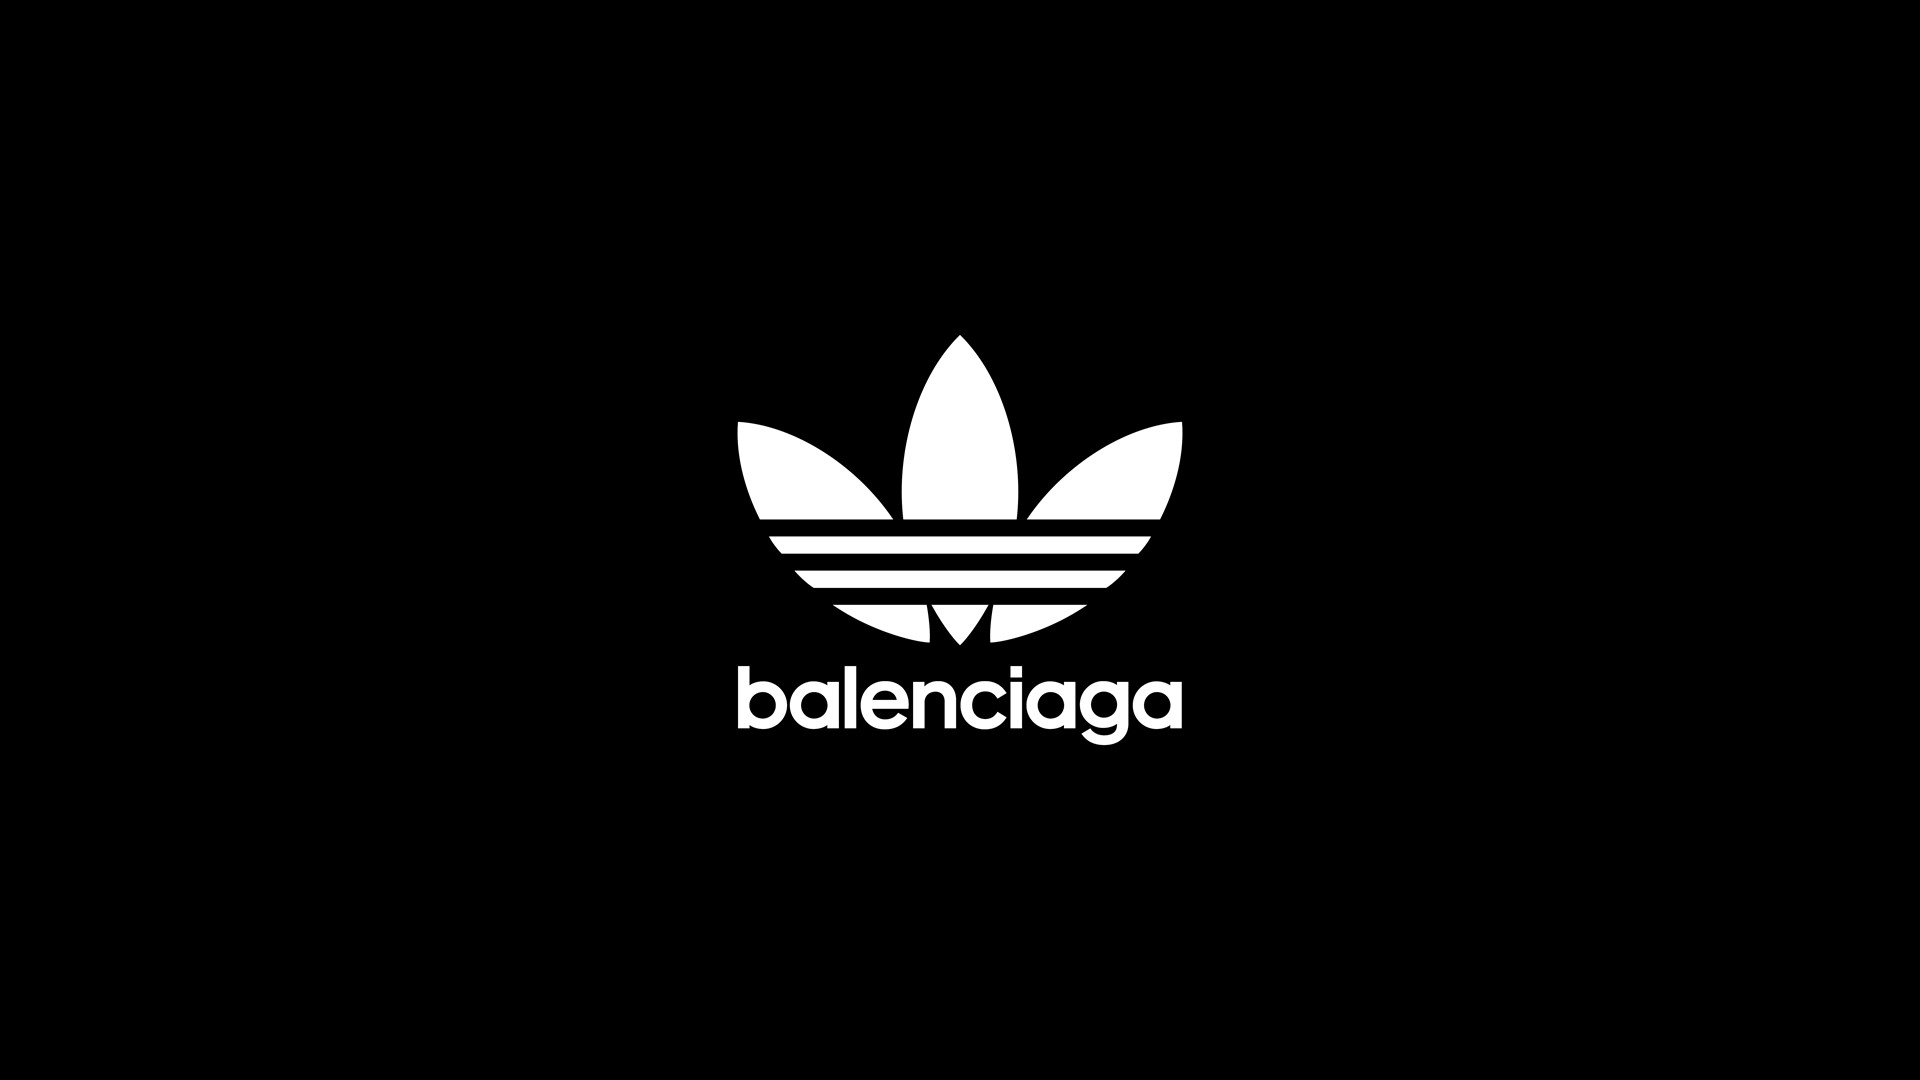 Balenciaga And Adidas Originals Confirm The Announcement Of Their New Partnership Balenciaga Adidas